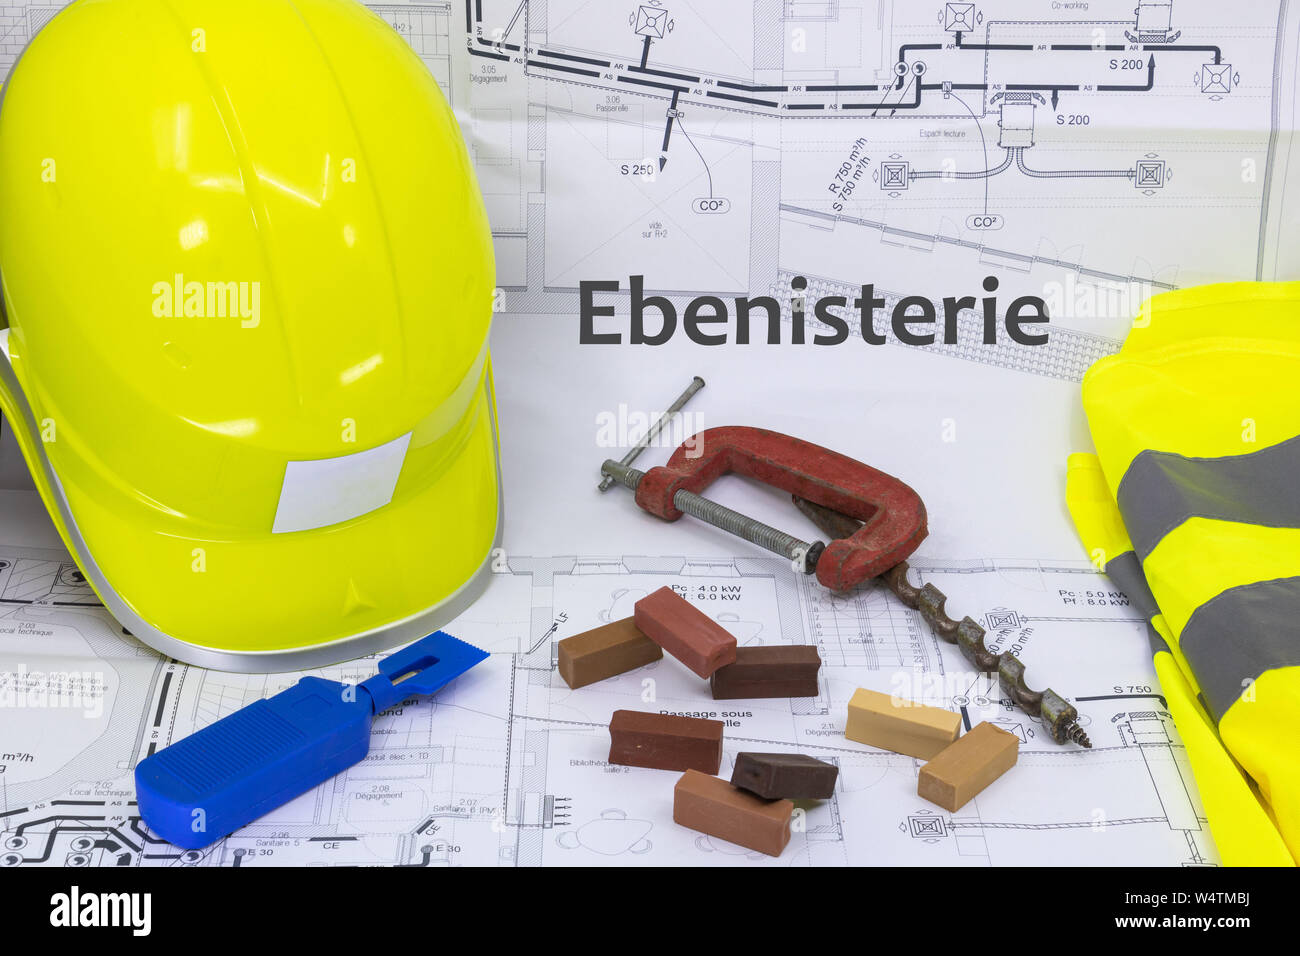 Tischler und Schreiner Grafik Ressource mit Haus plan Sicherheitsausrüstung und Holzbearbeitungsmaschinen (ébénisterie ist Tischlerei auf Französisch geschrieben) Stockfoto